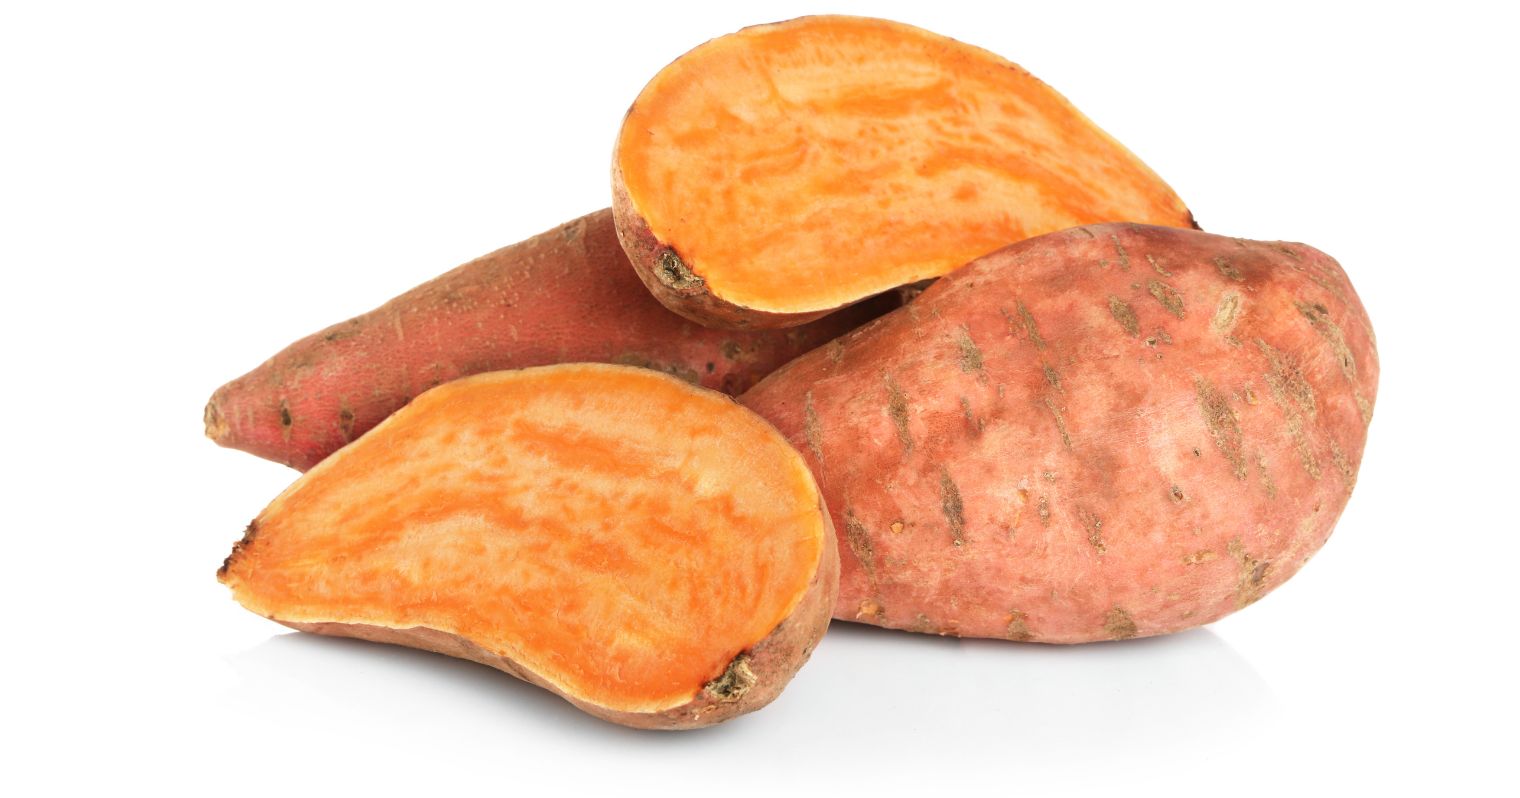 Krumpli formájú és jellegű, narancssárga belsejű gyümölcs/zöldség.